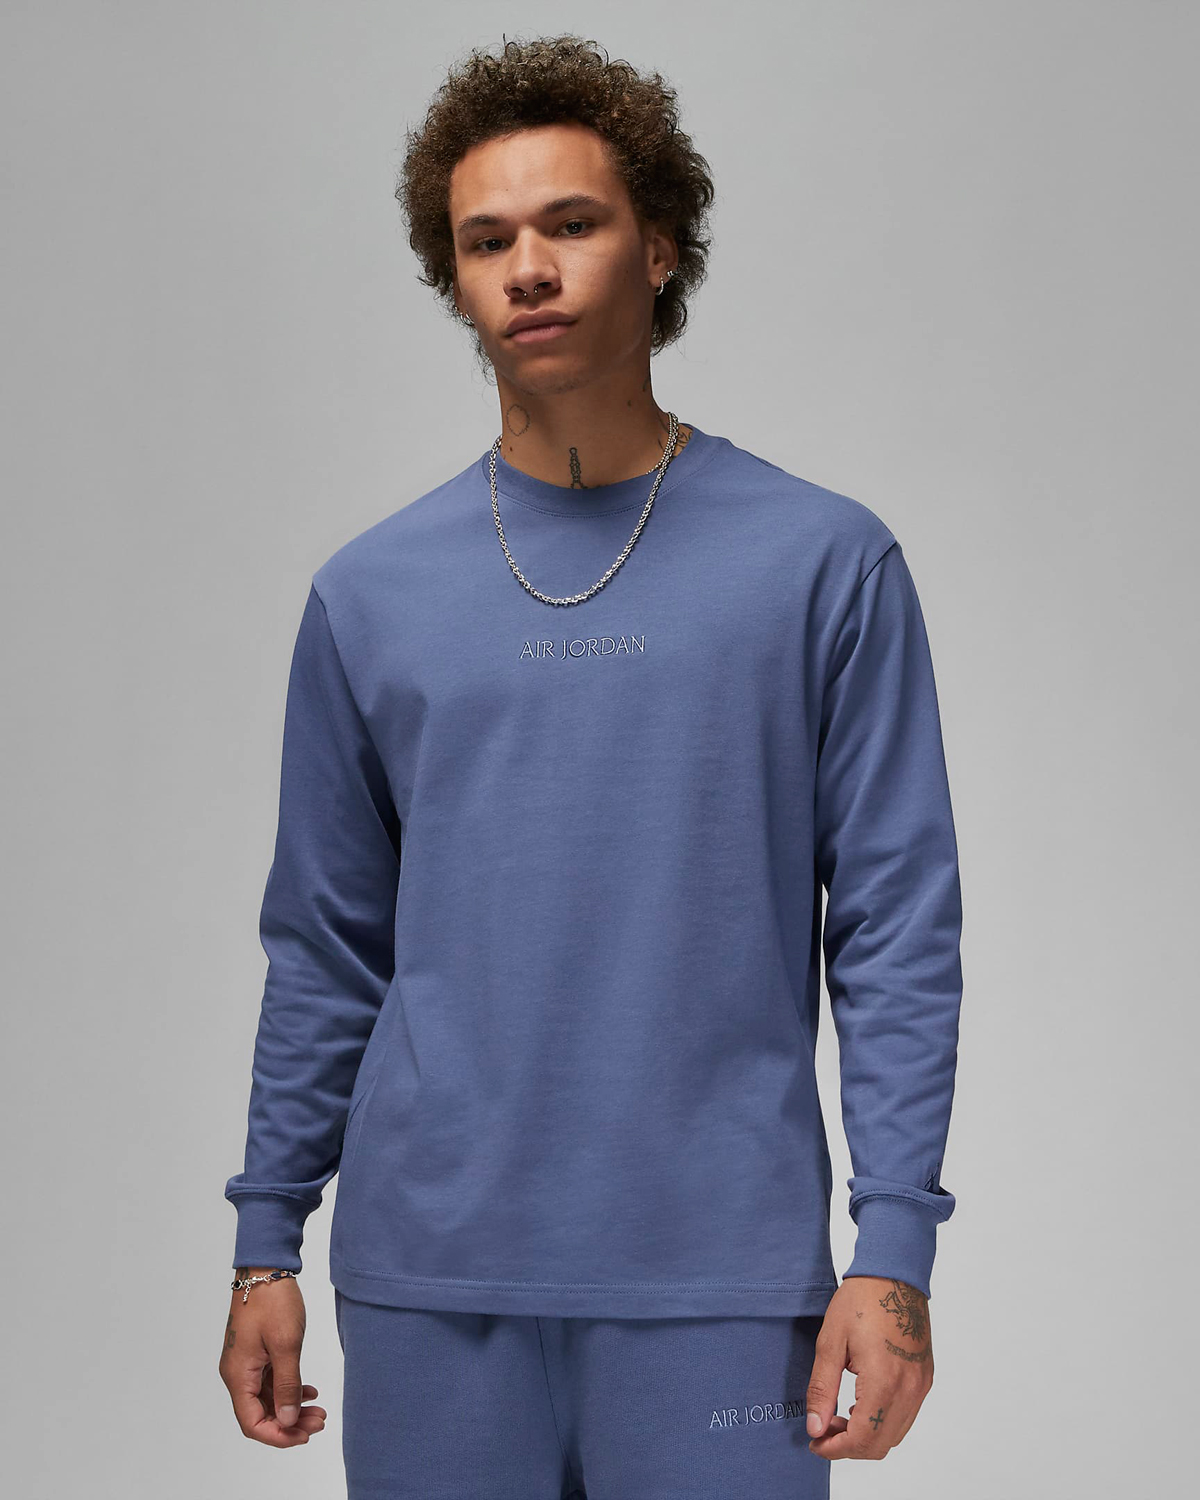 Jordan-Wordmark-Long-Sleeve-T-Shirt-Diffused-Blue